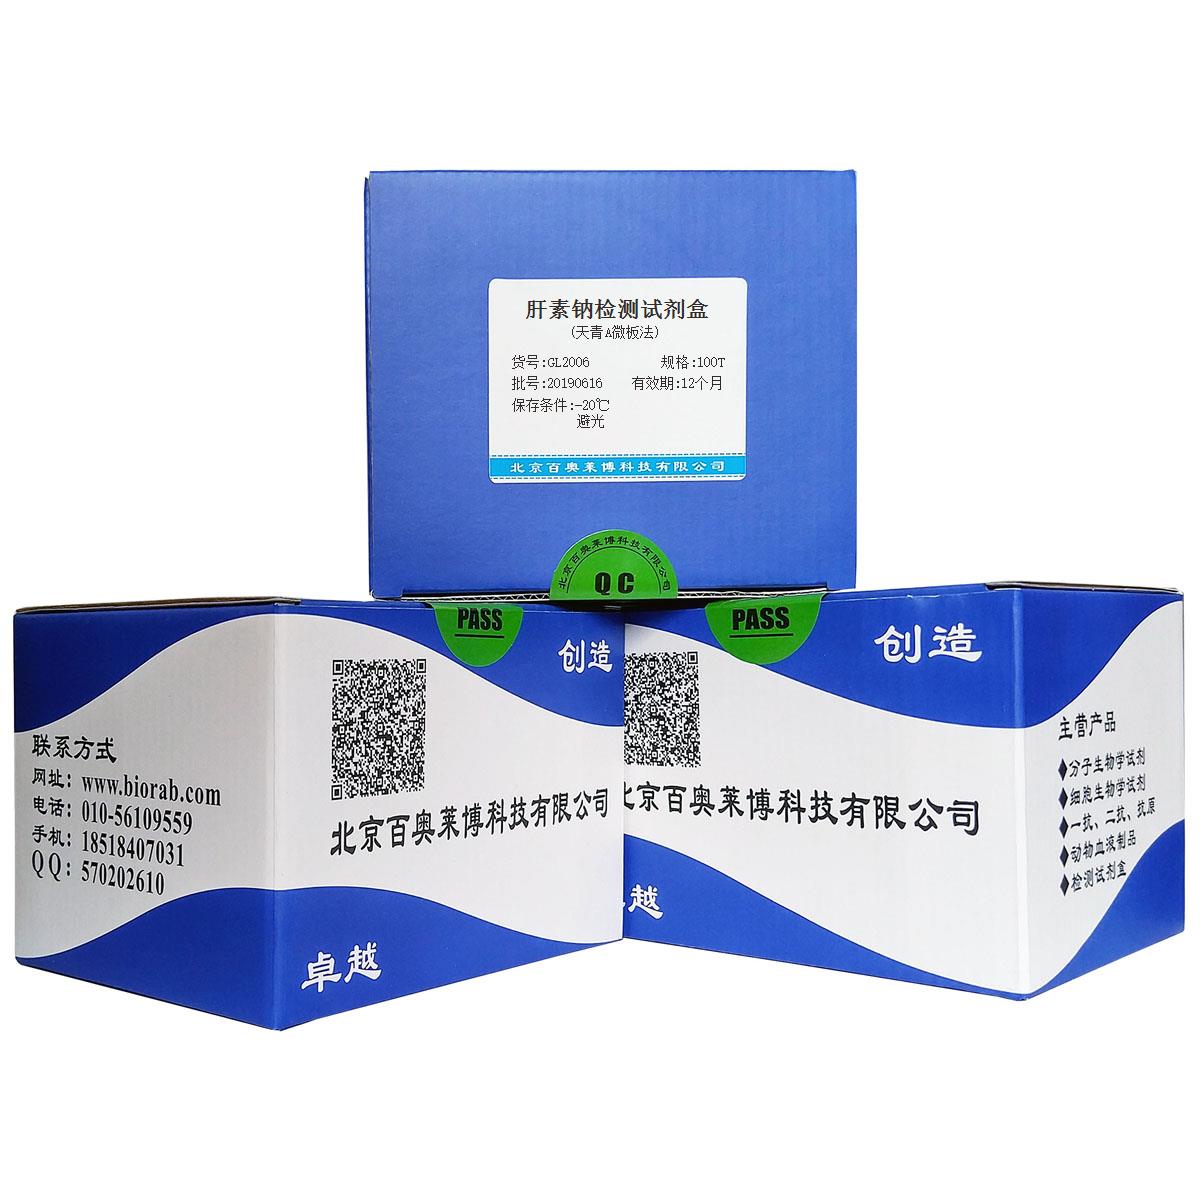 肝素钠检测试剂盒(天青A微板法)优惠促销